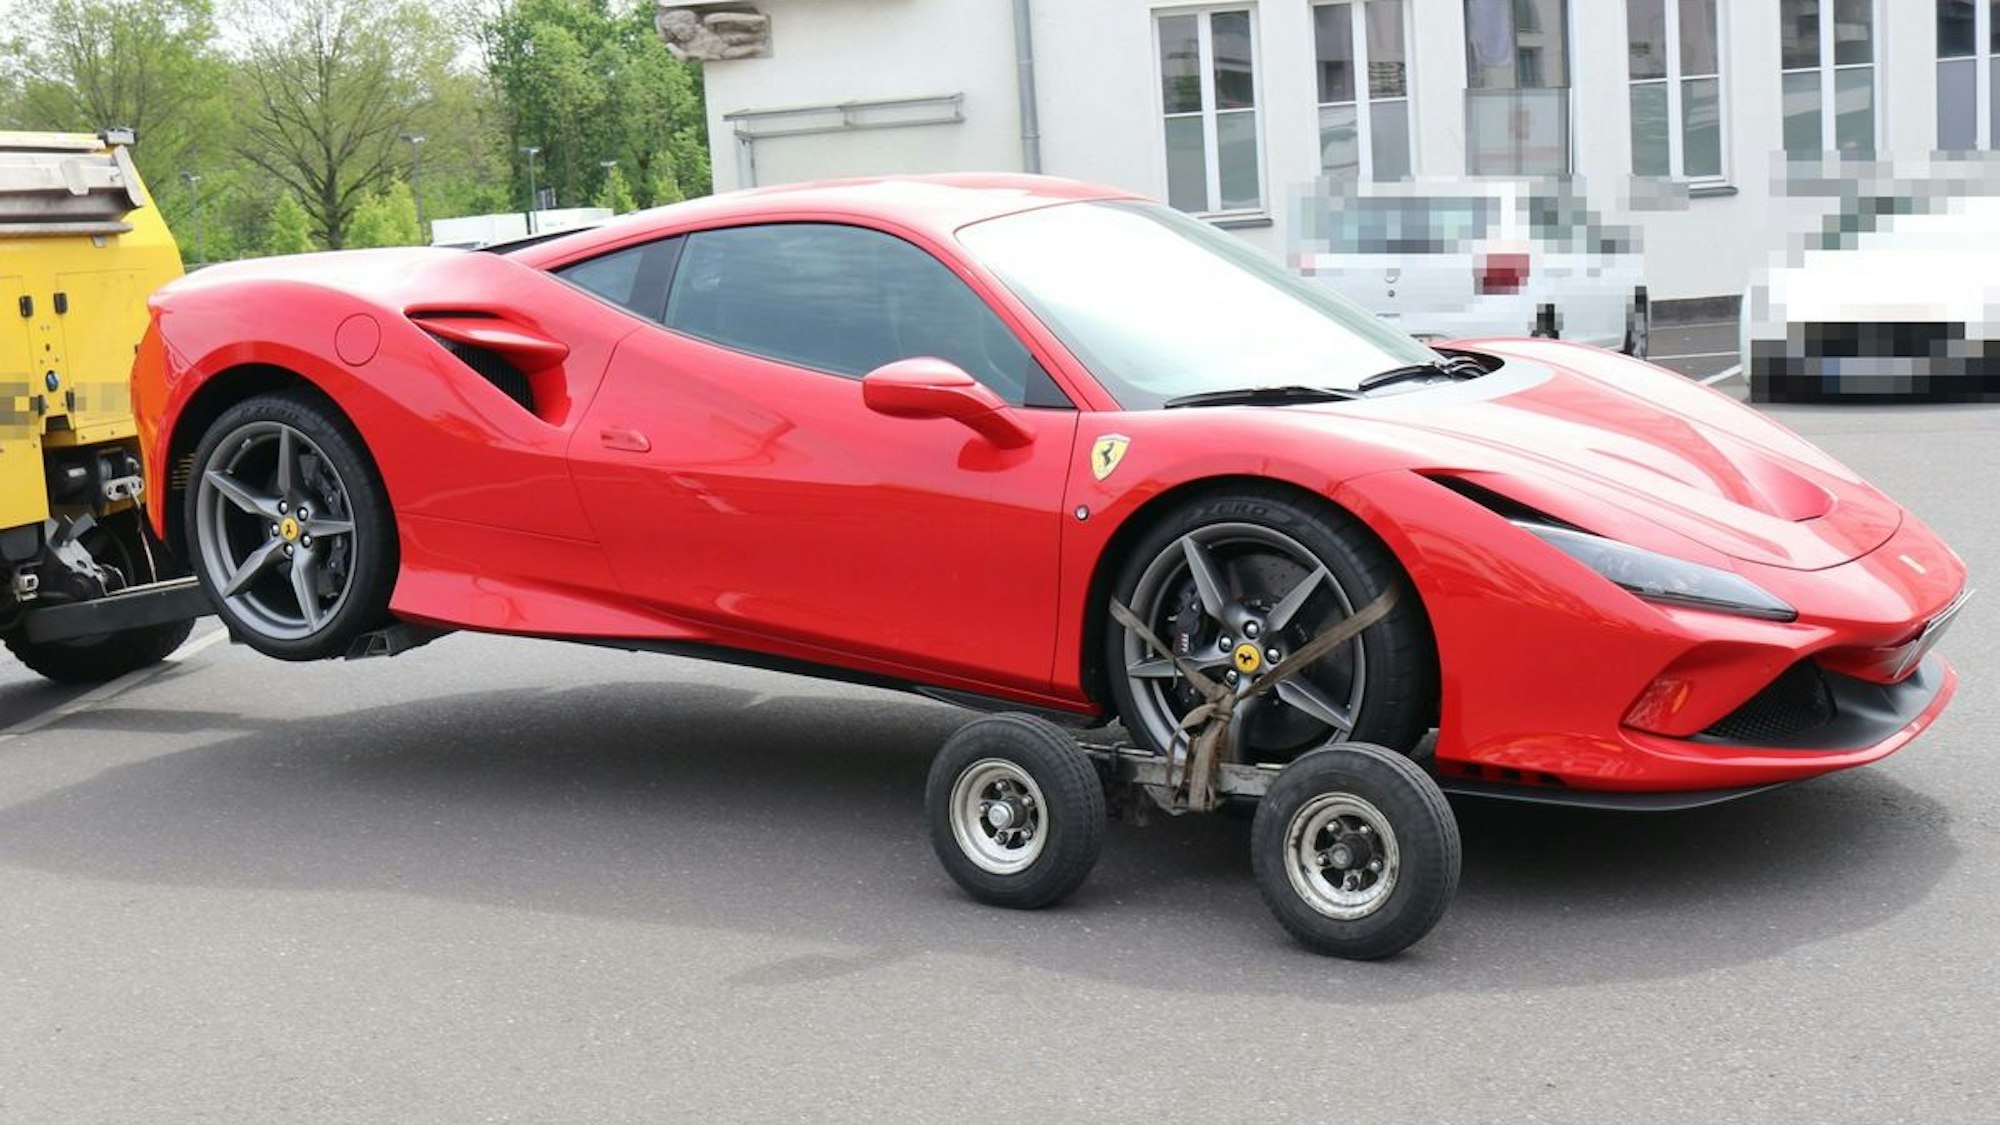 Das Bild zeigt einen roten Ferrari, der abgeschleppt wird.